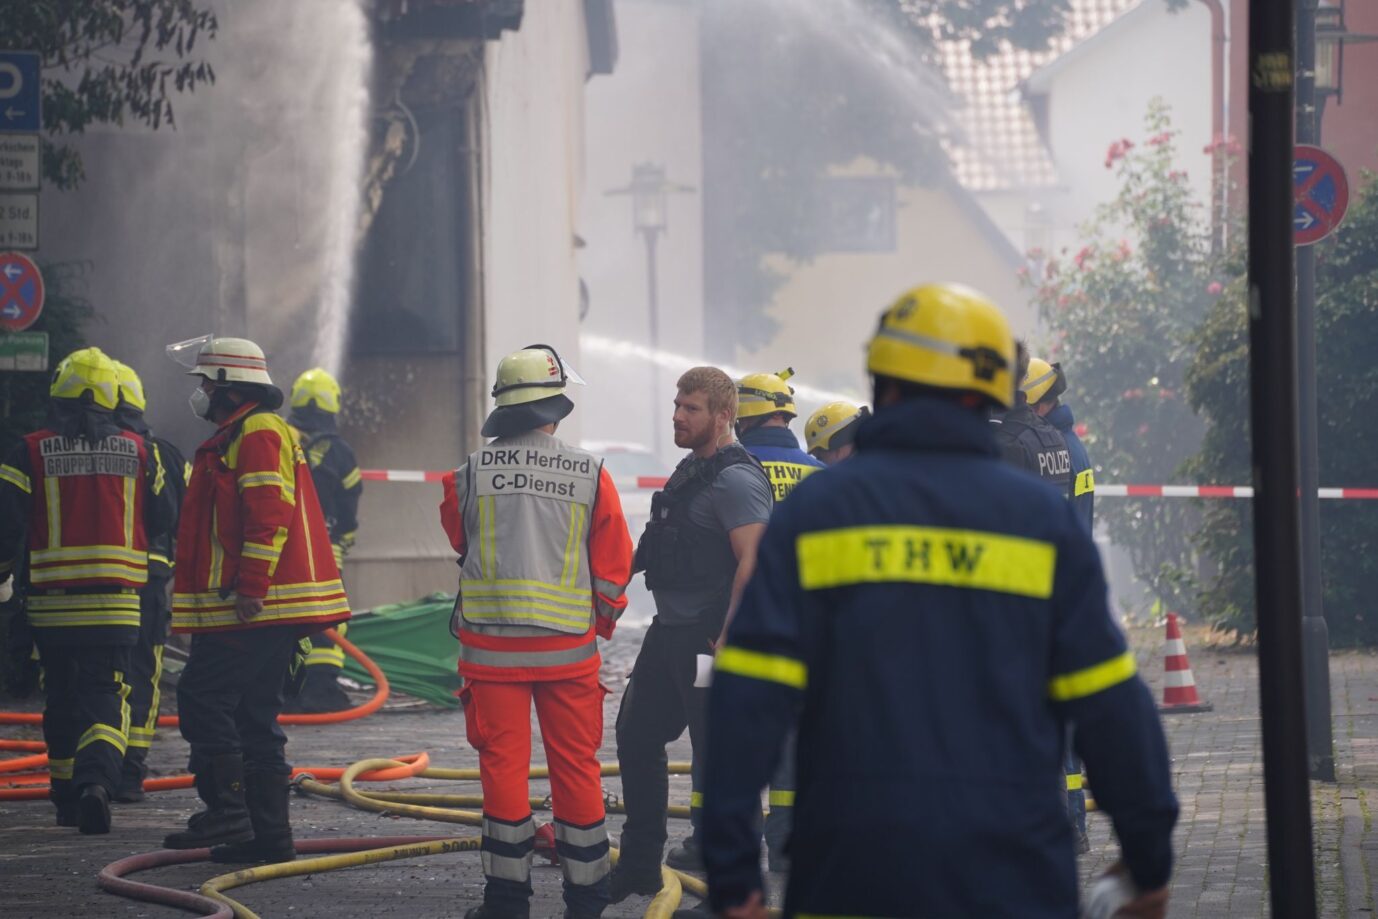 Polizei und Feuerwehr in der Herforder Innenstadt, nachdem mehrere Explosionen die Innenstadt erschütterten Foto: picture alliance/dpa/Westfalennews | Christian Müller